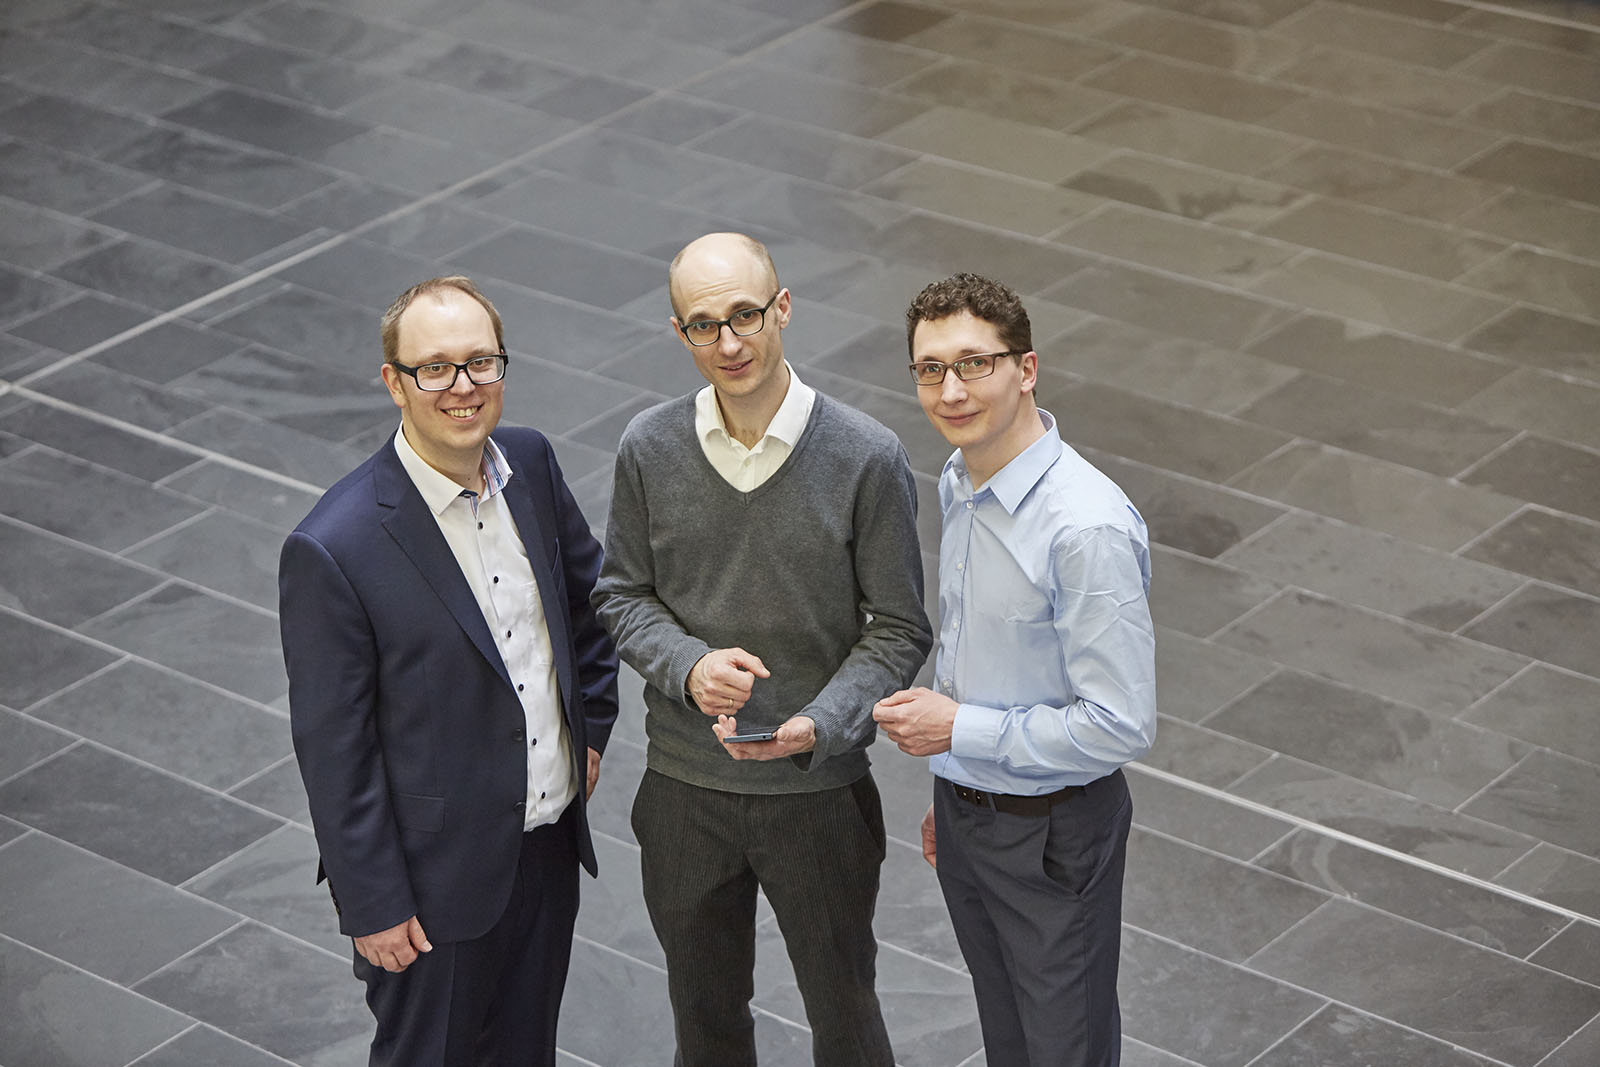 Joseph von Fraunhofer Prize 2017: Stefan Döhla, Guillaume Fuchs and Markus Multrus from Fraunhofer IIS.